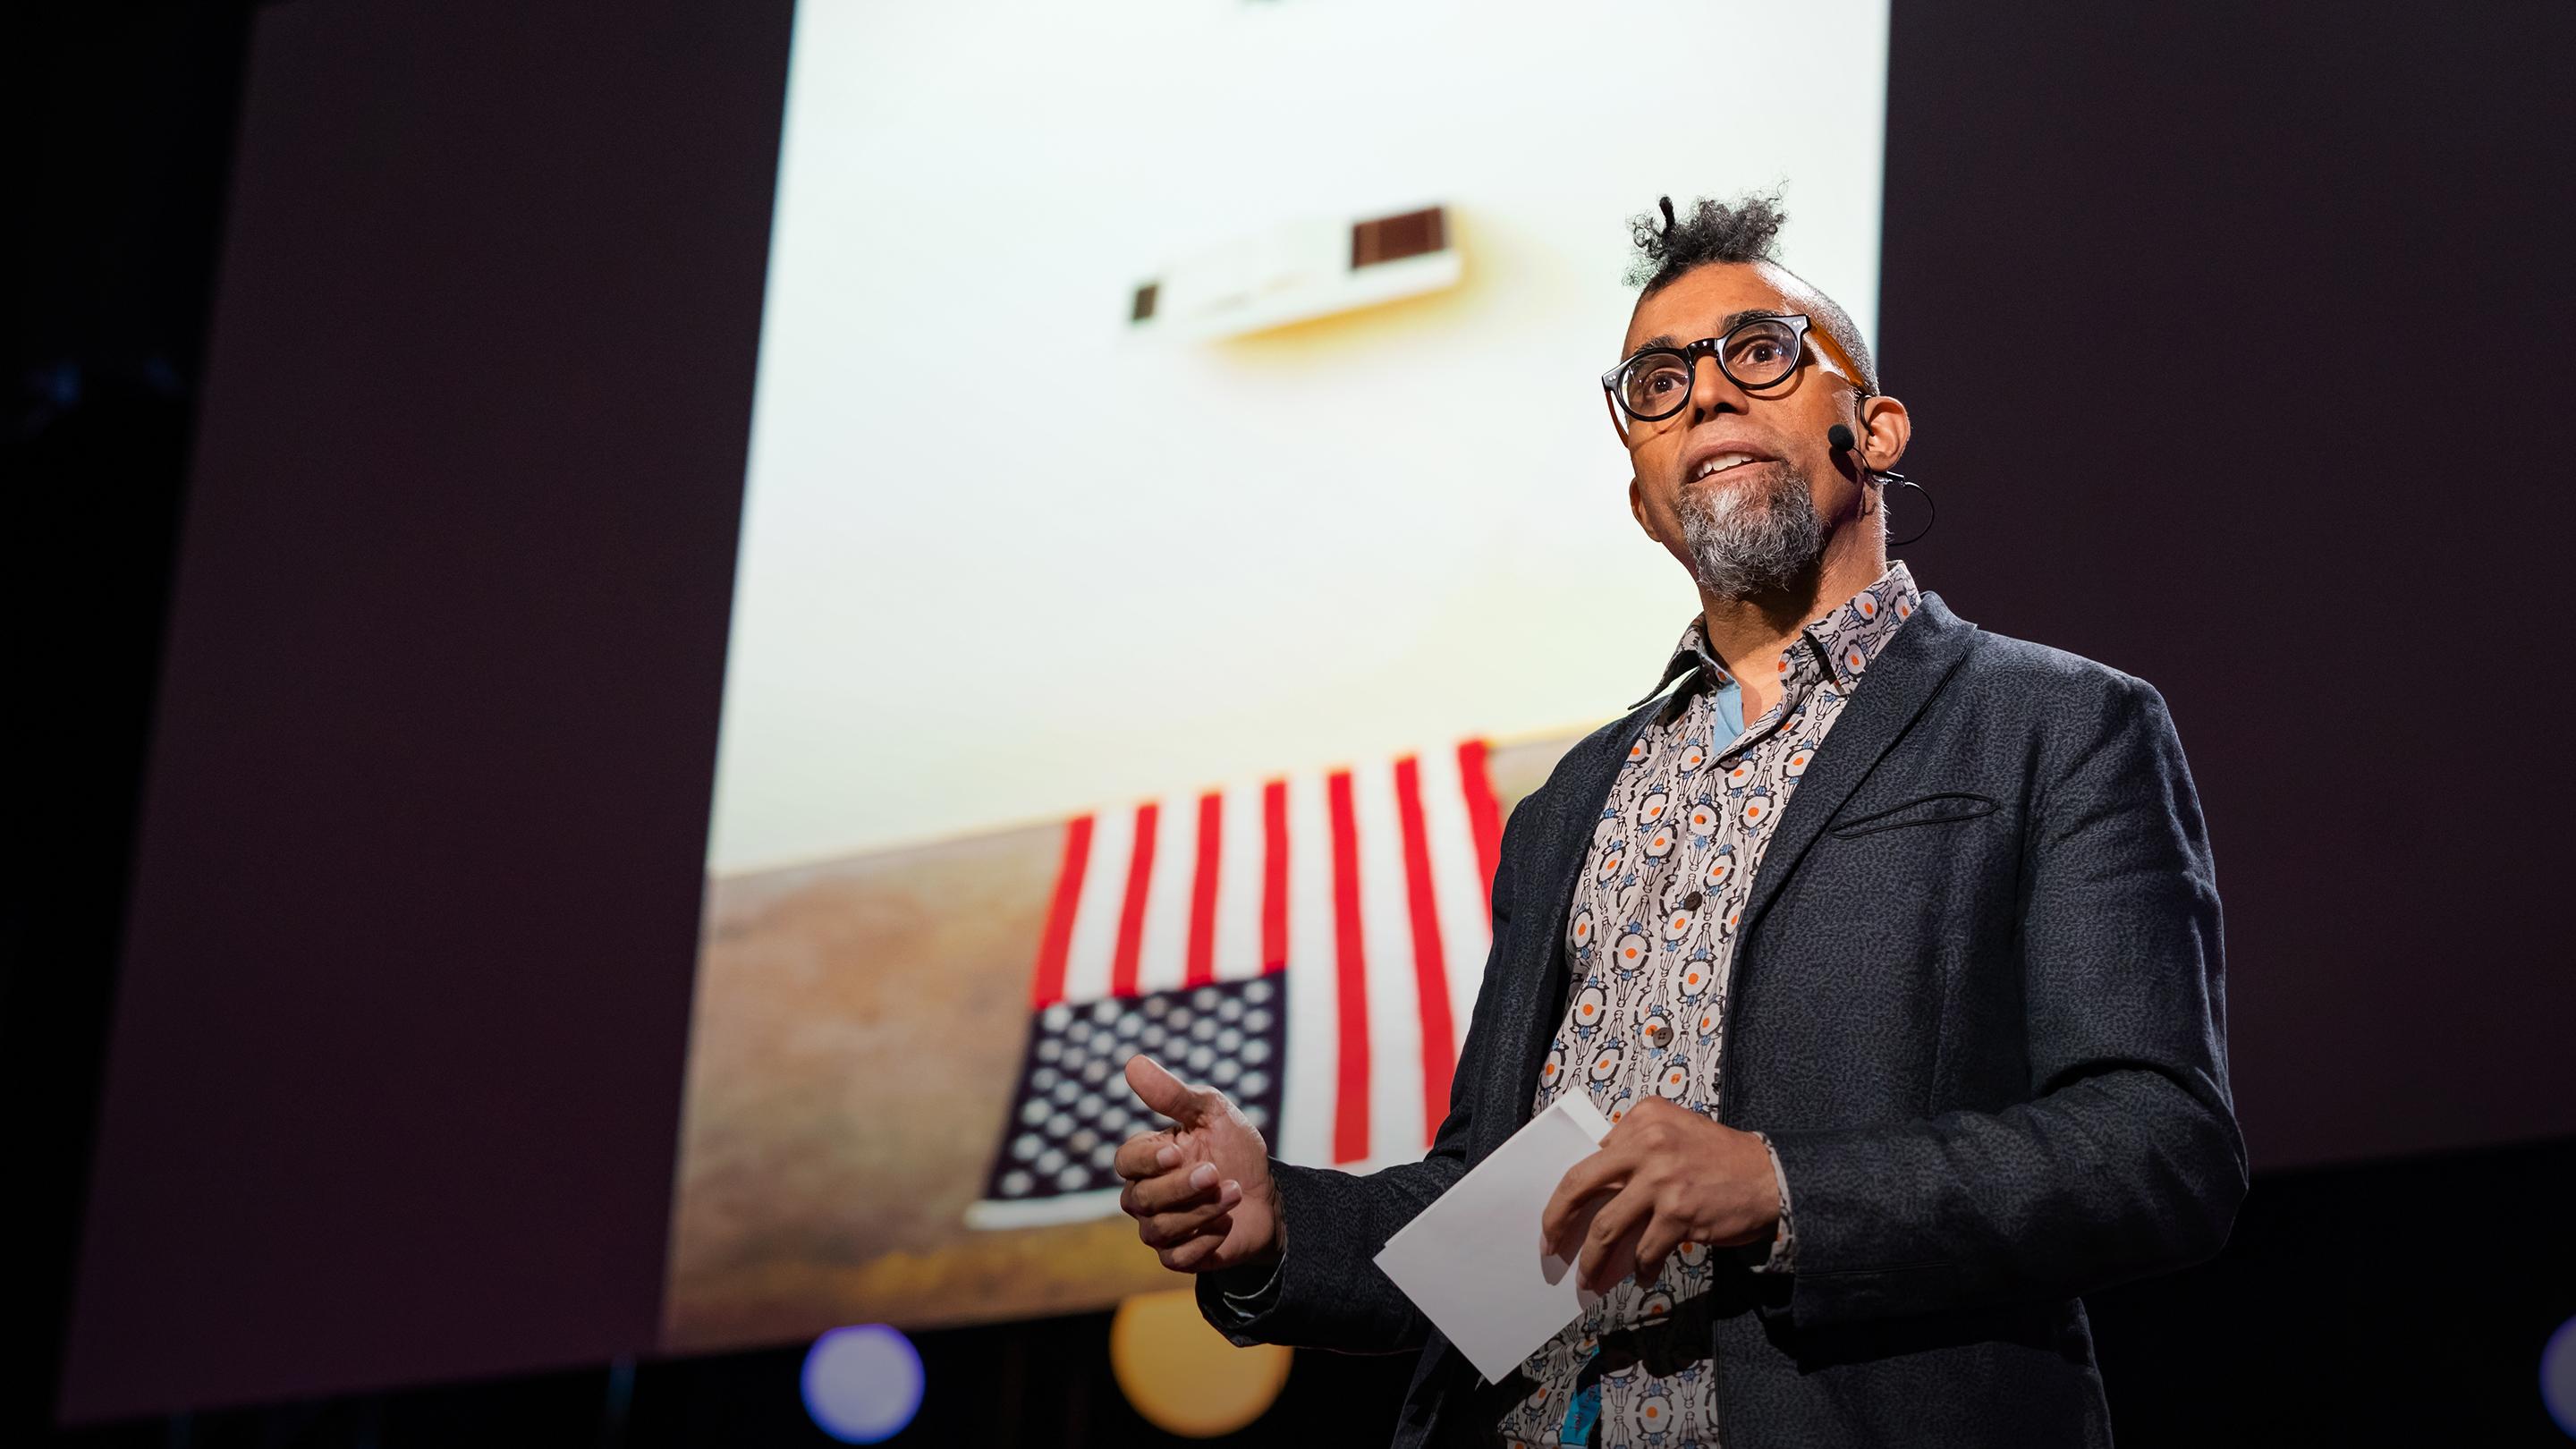 Como a arte pode moldar a conversa nos EUA sobre liberdade | Dread Scott